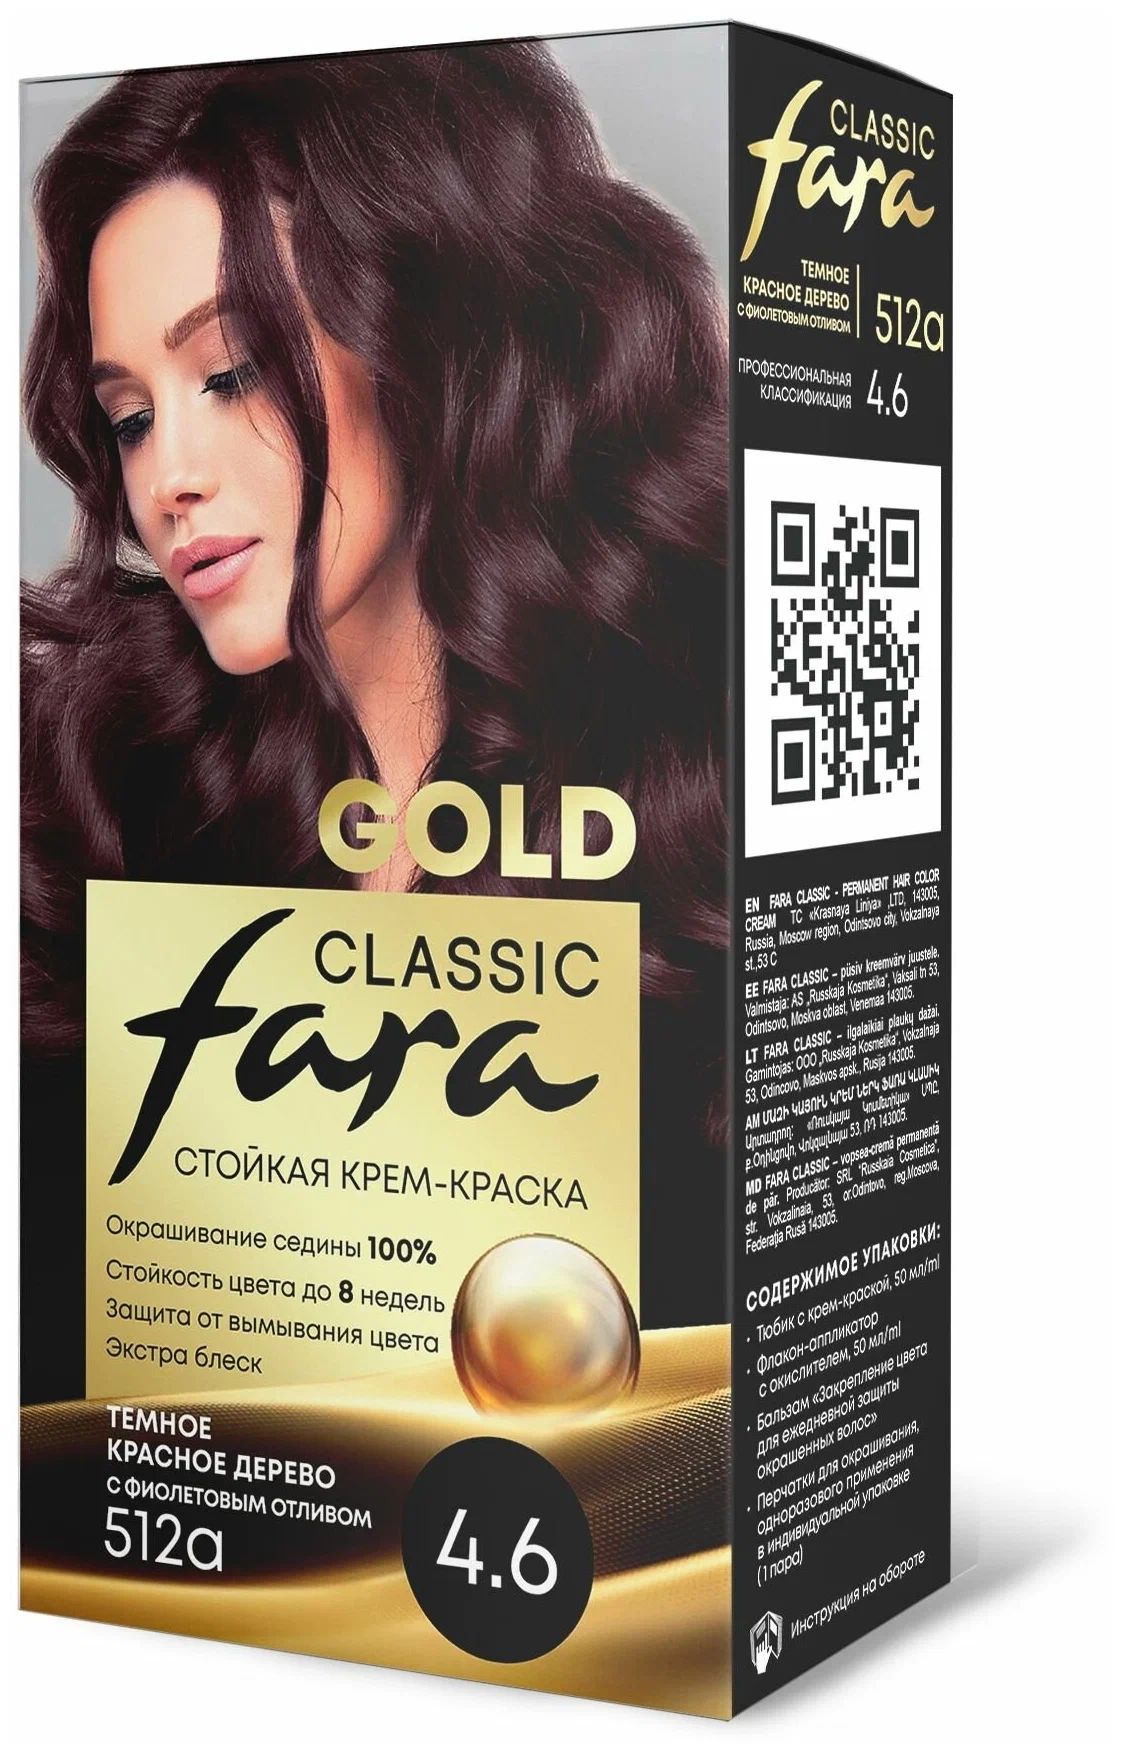 Крем-краска для волос Fara Classic Gold 512А красное дерево 4.6, 140 г каравай каравай русская народная песенка